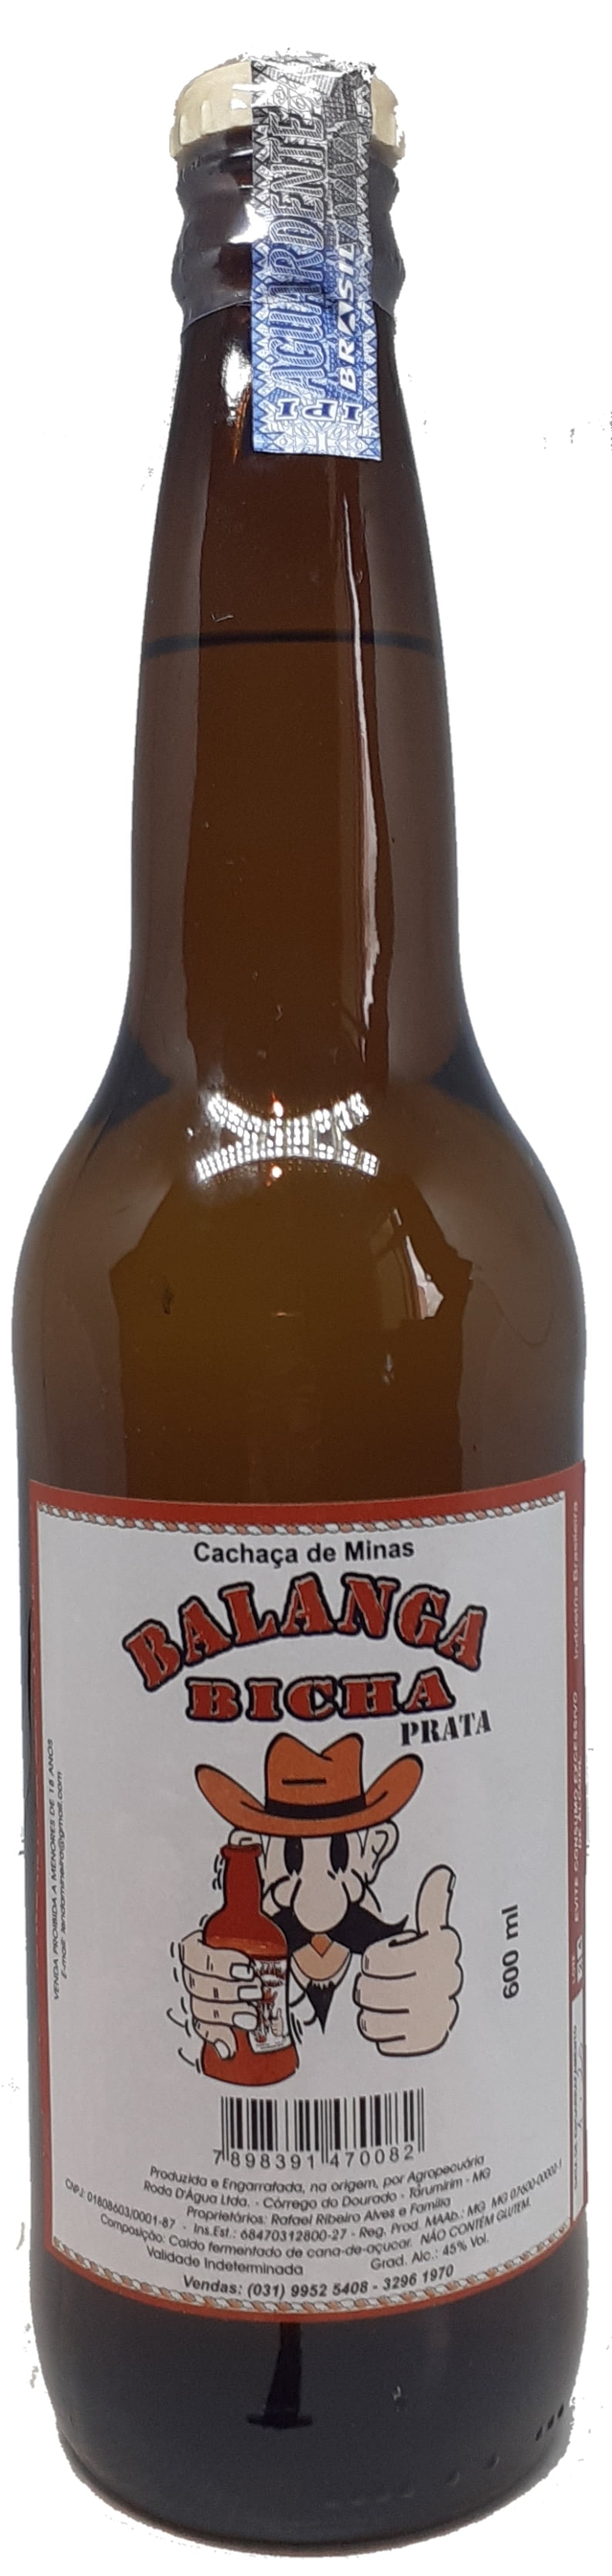 Cachaça Balanga Bicha Prata 600 ml